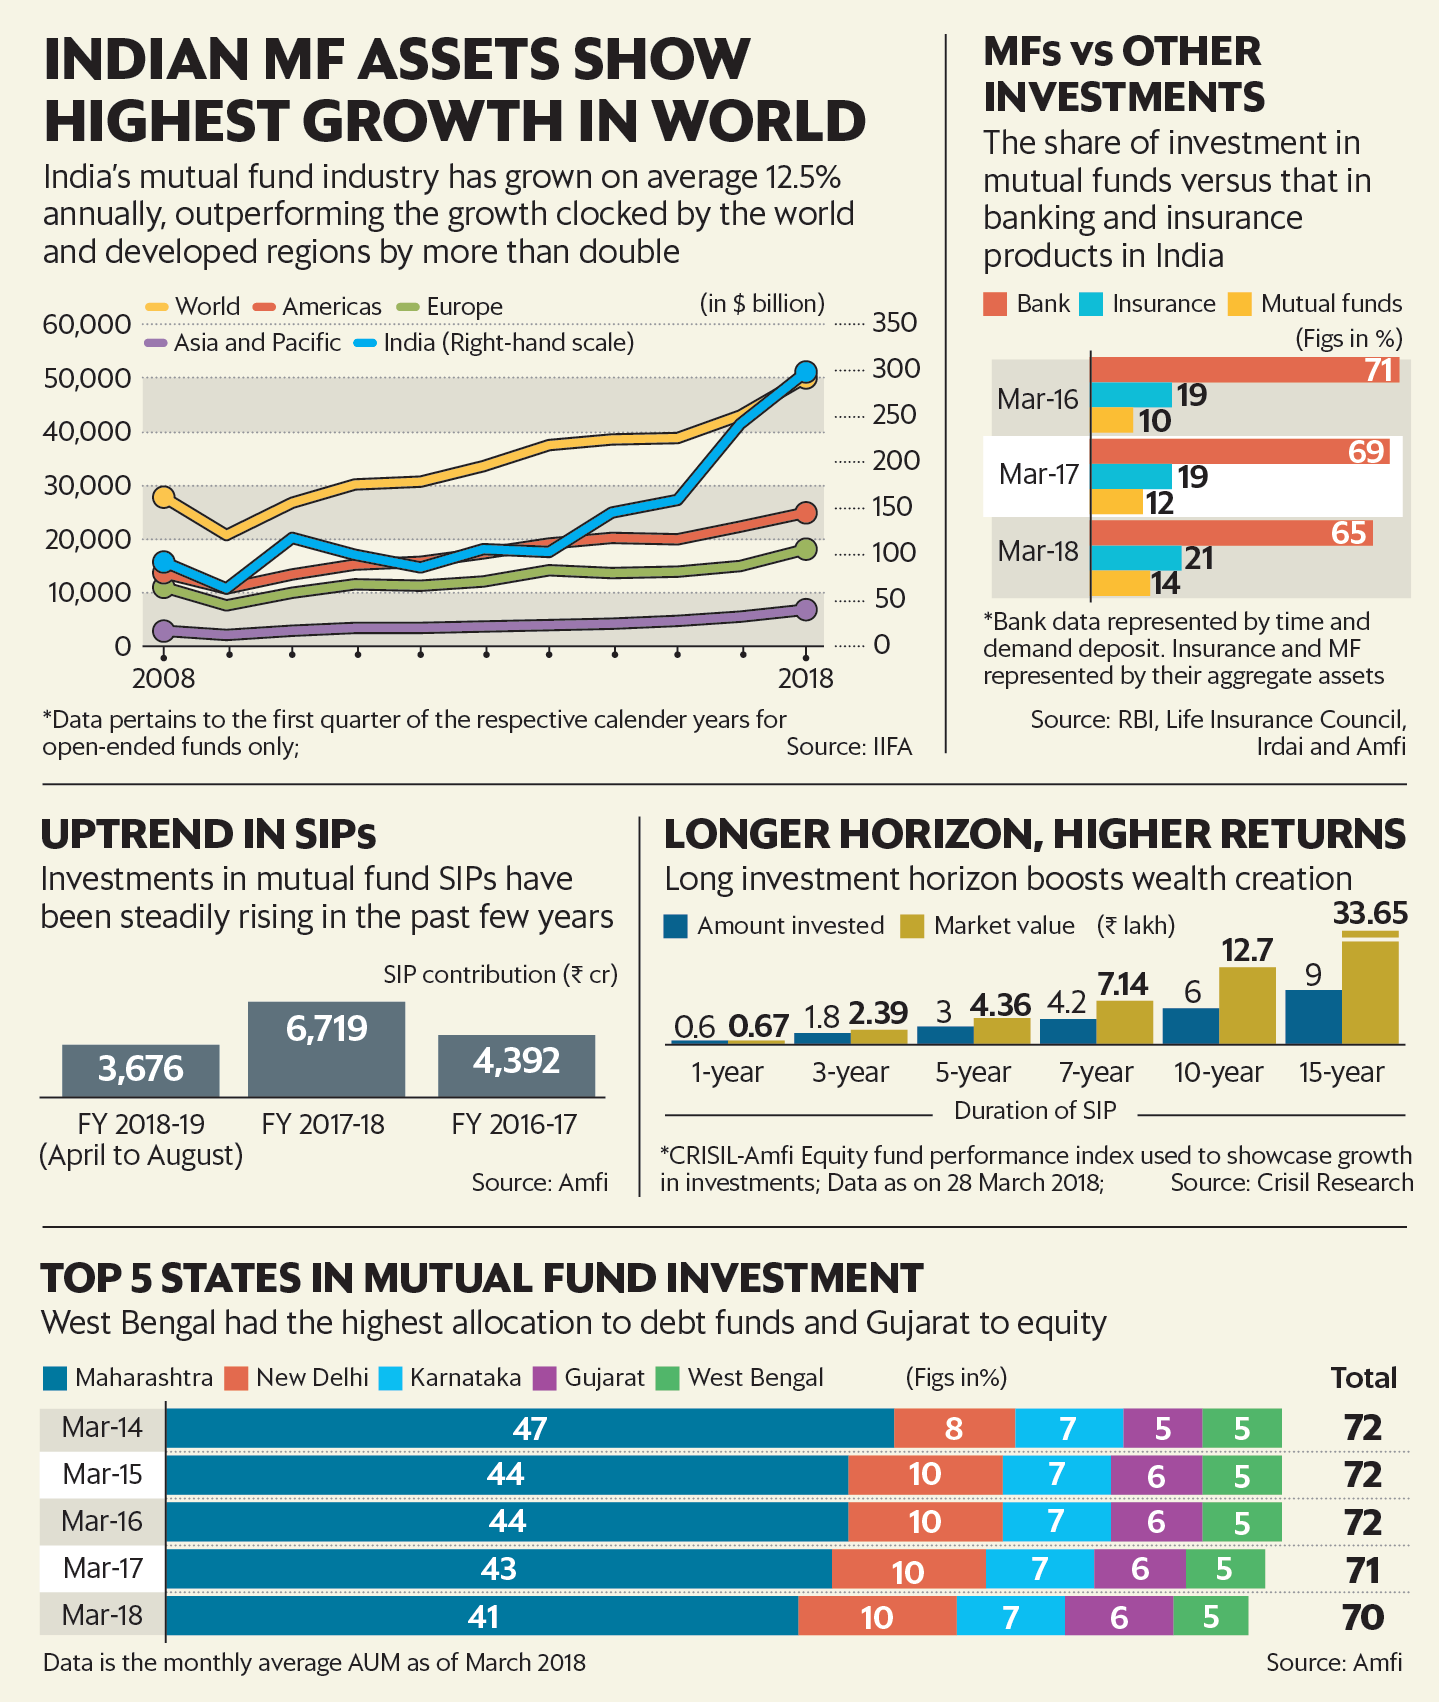 म्यूचुअल फ़ंड अब भारतीय निवेश बाज़ार का सबसे भरोसेमंद साधन बनता जा रहा है। 